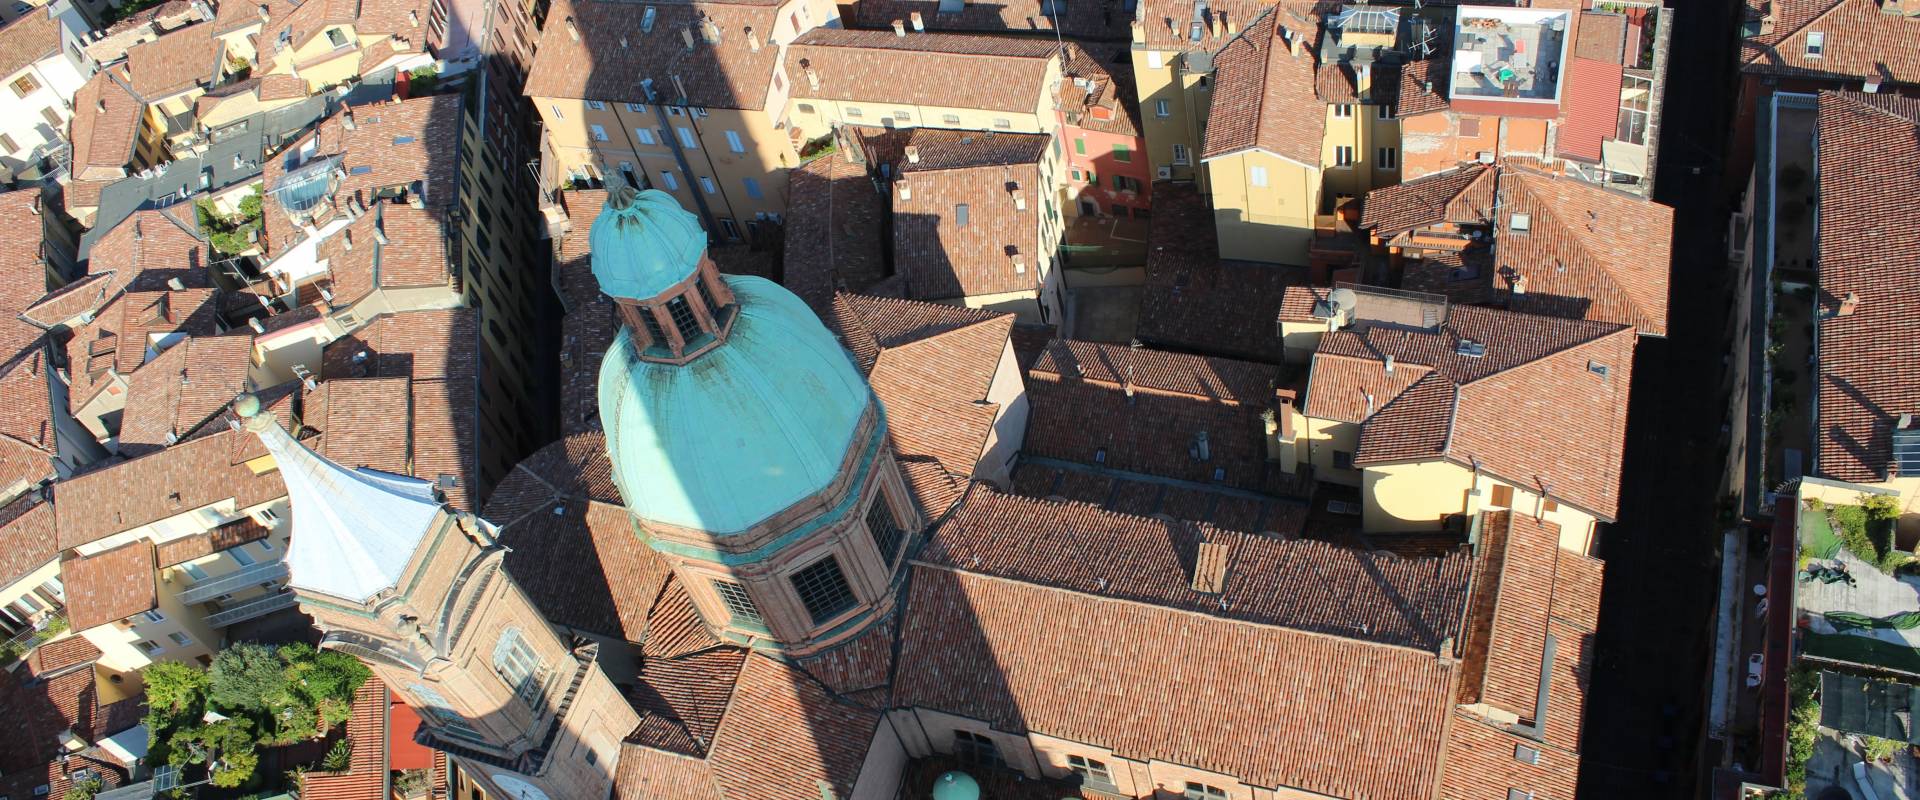 Chiesa Di Santa Maria Della Vita - visuale dall'alto della Torre degli Asinelli photo by G1G4BREAK